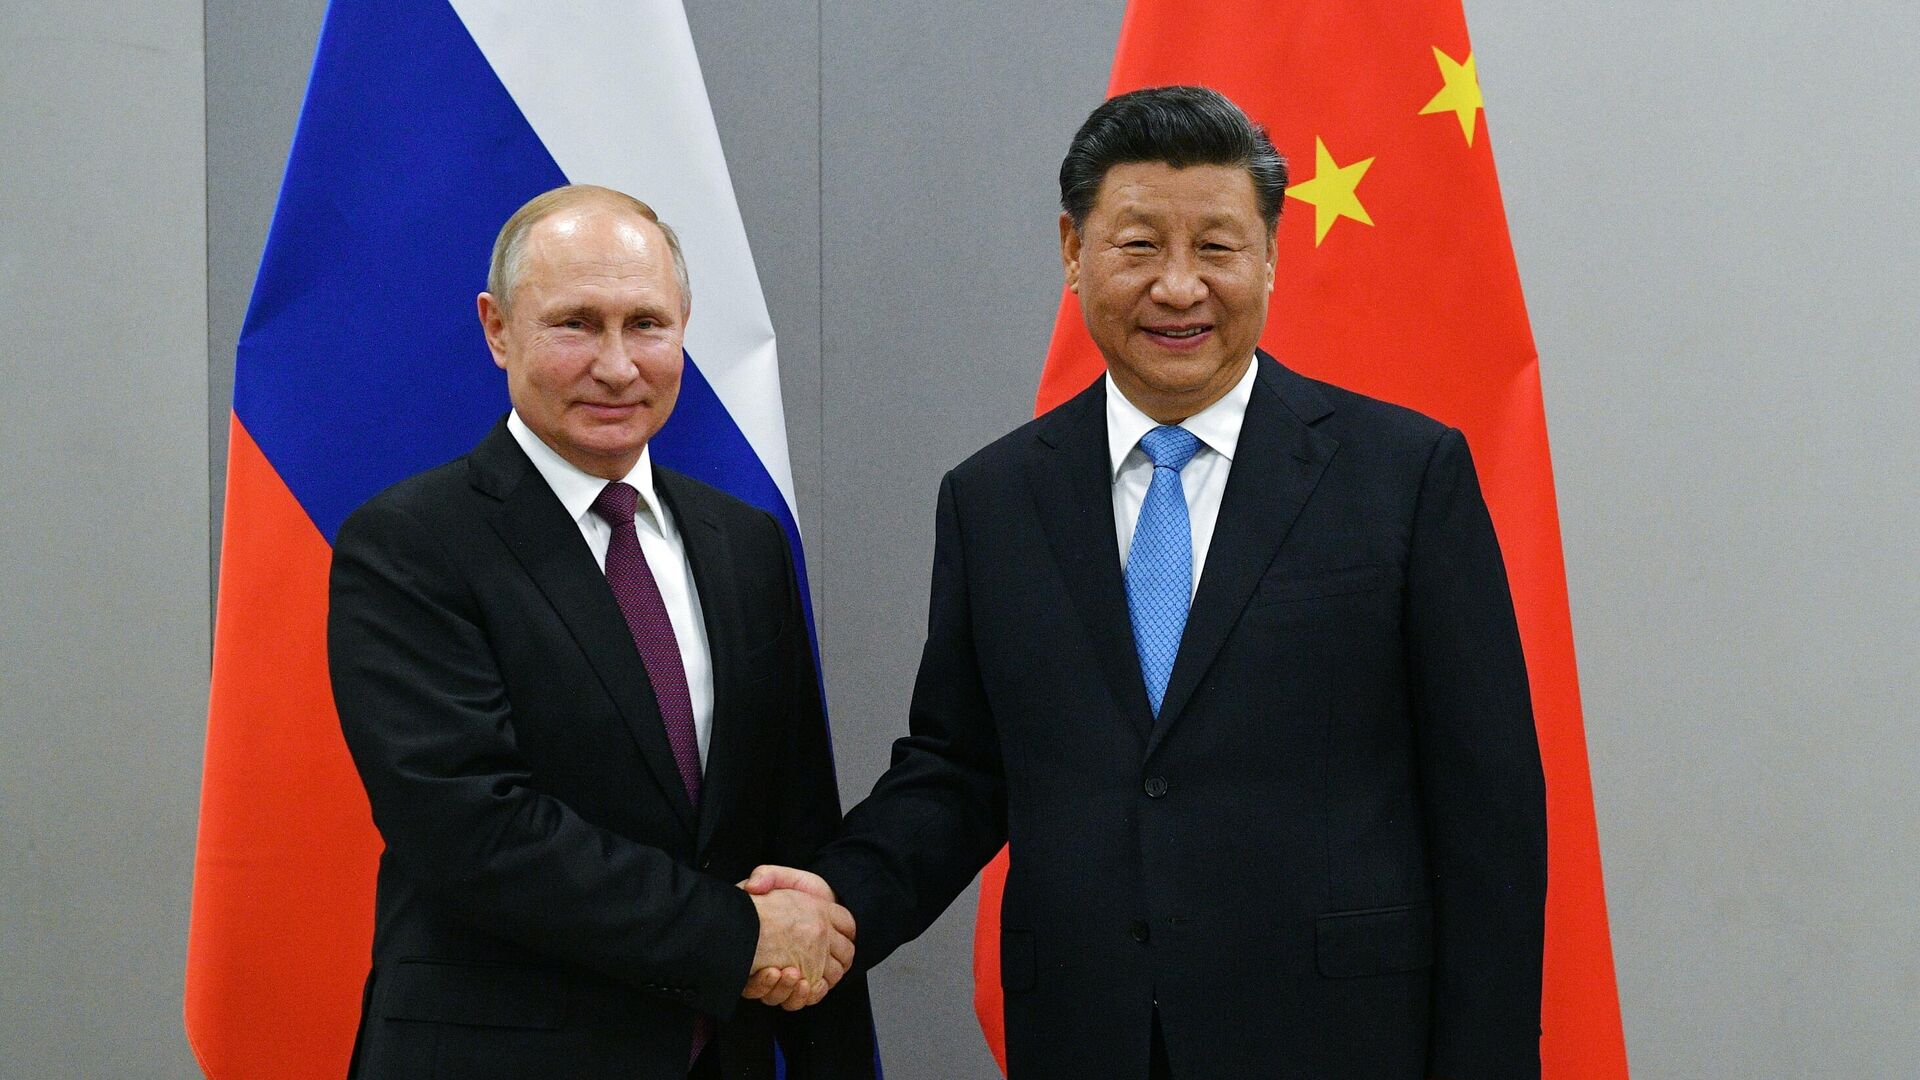 WP: встреча Путина и Си Цзиньпина отражает постепенное окончание господства США